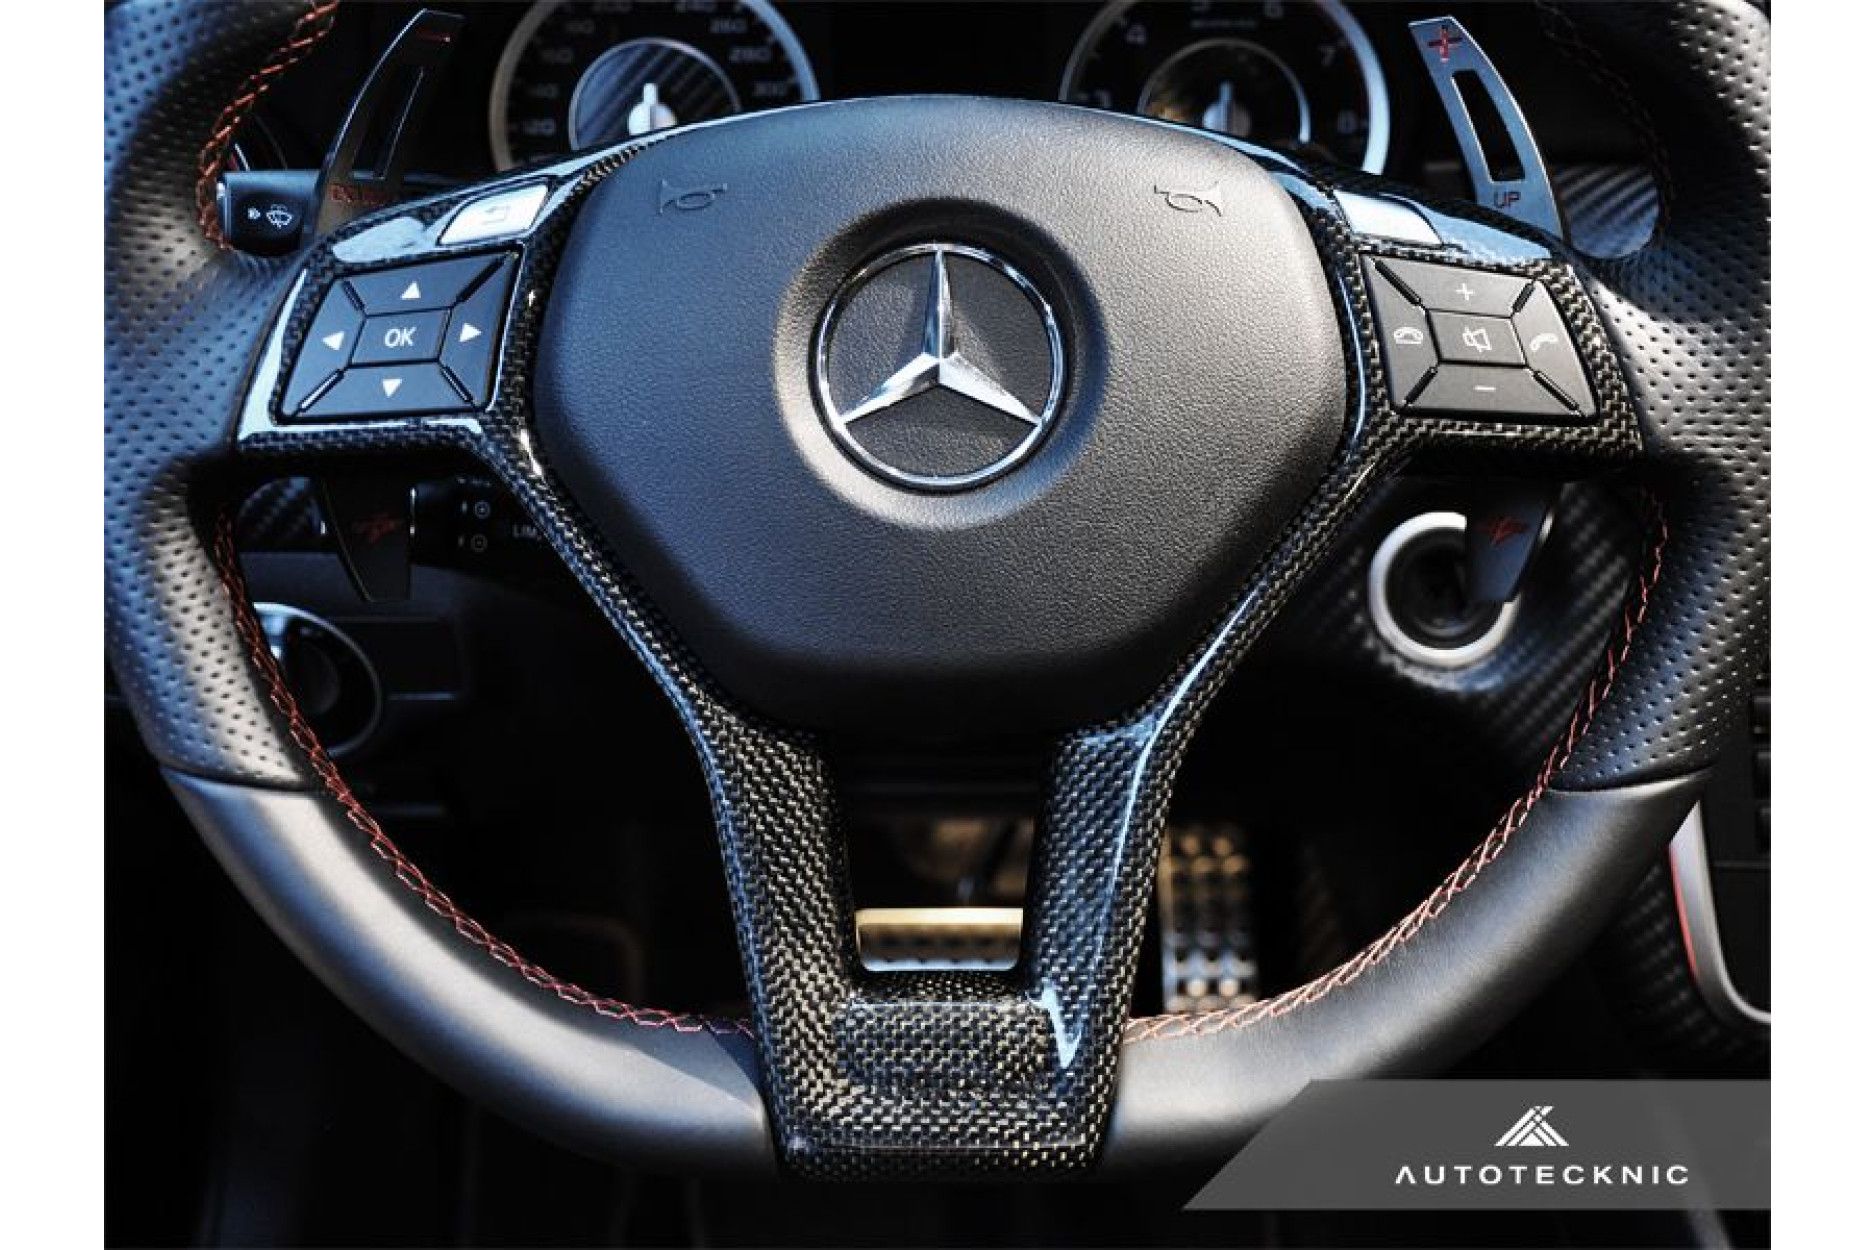 AutoTecknic Competition Schaltwippen für Mercedes (verschiedene Fahrzeuge)  - online kaufen bei CFD